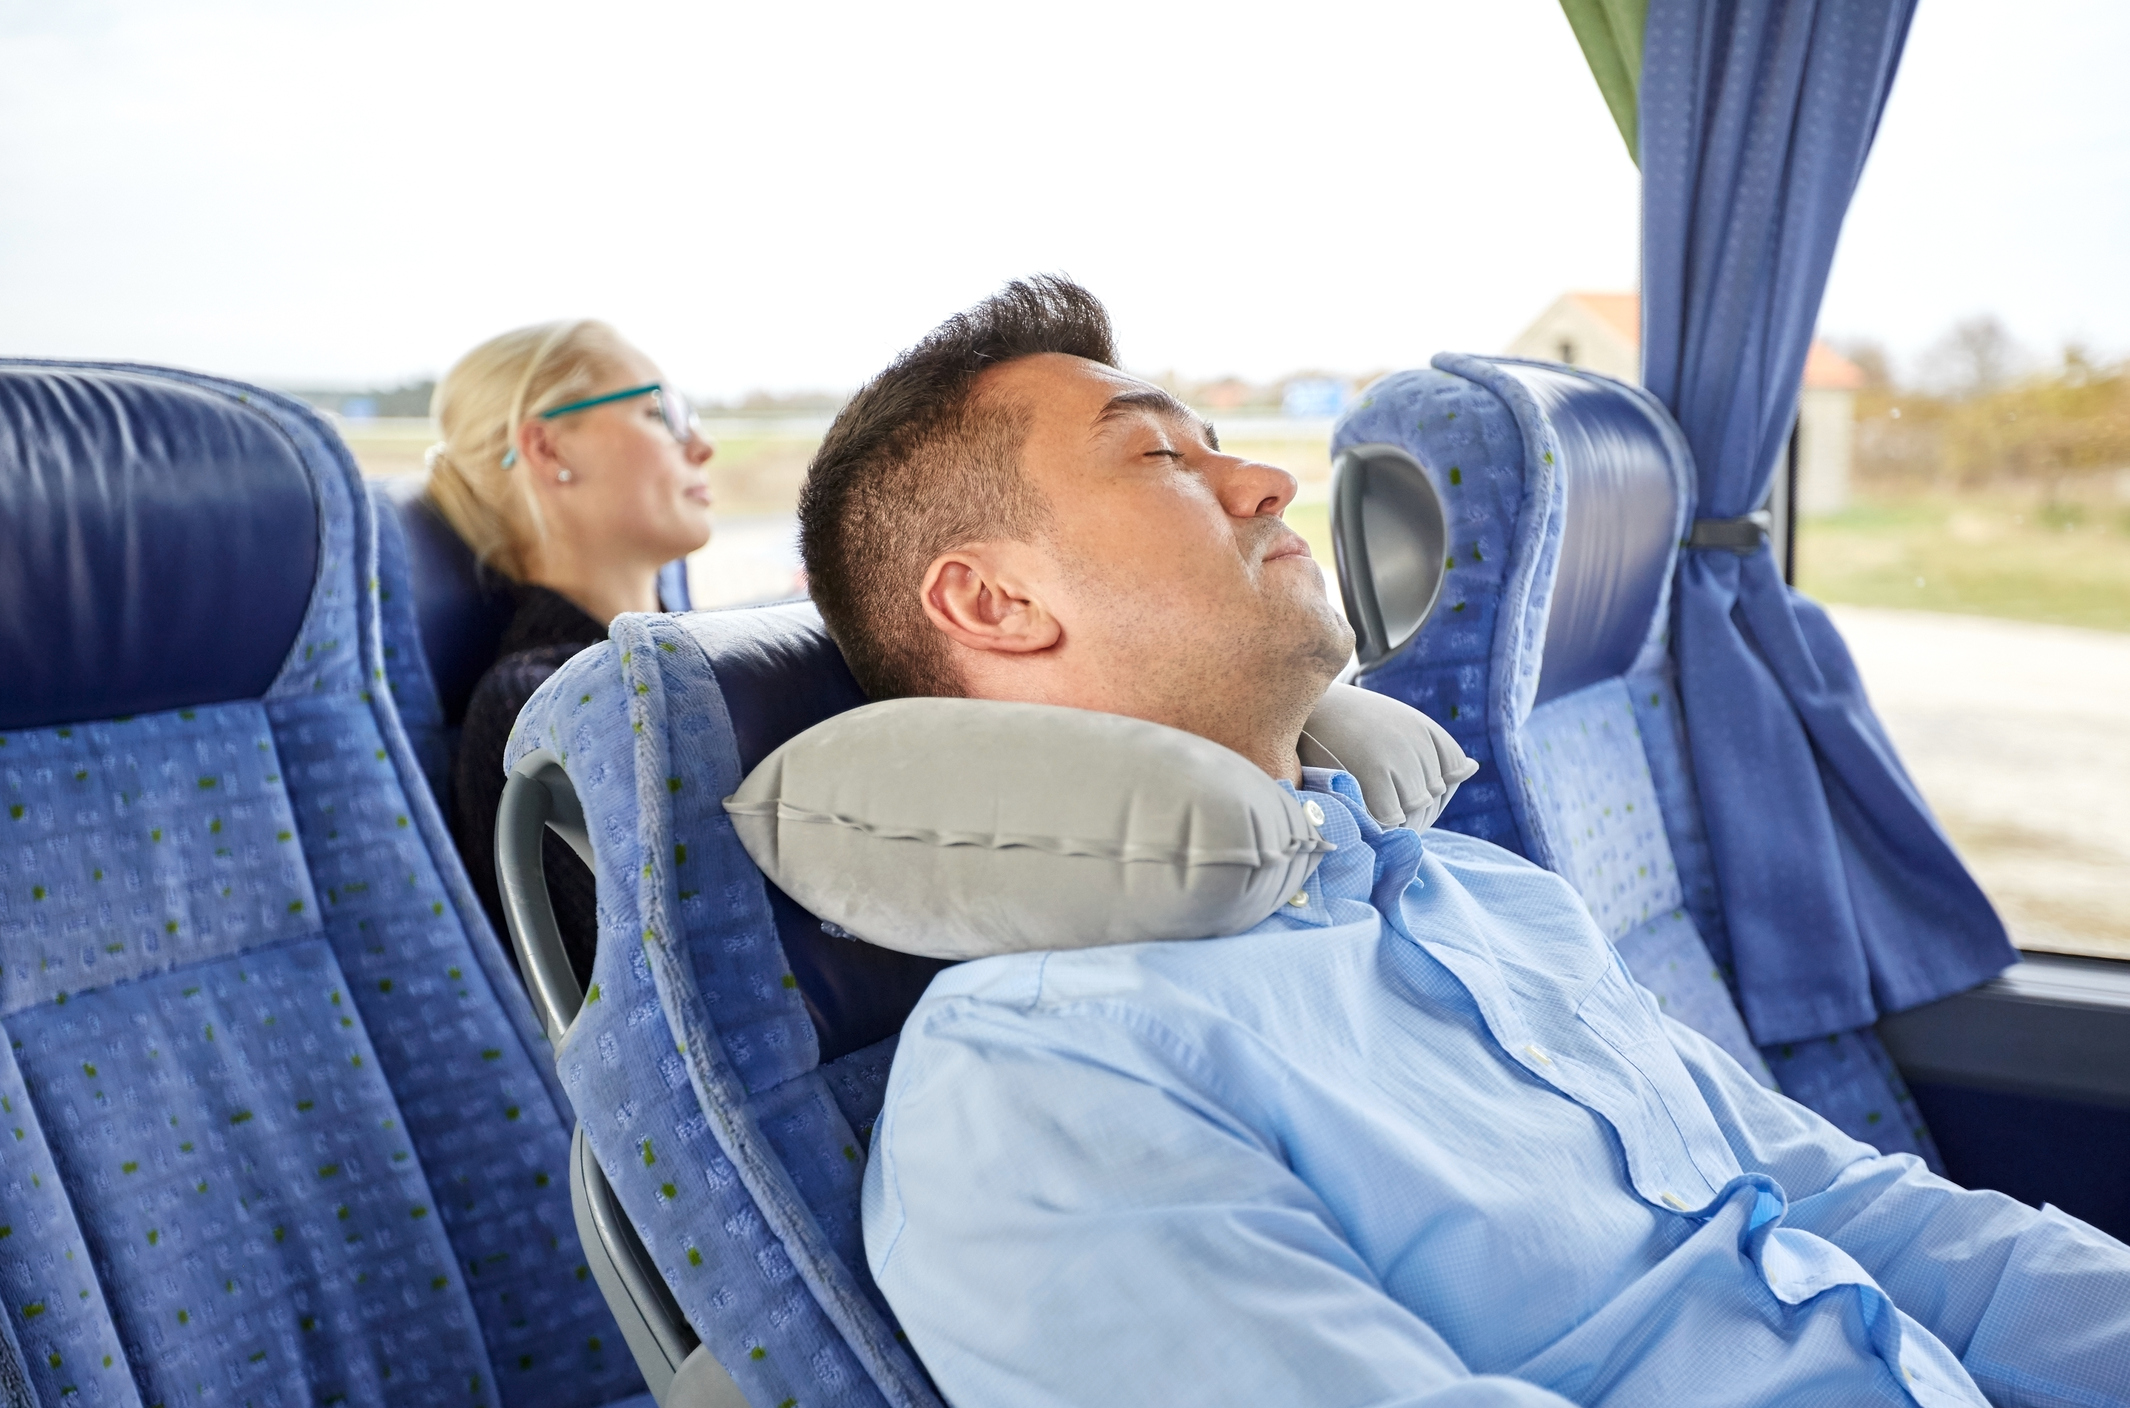 Dvaja cestujúci, spiaci v autobuse, muž má vankúš. Sedadlá, vonku cez okná vidieť stromy